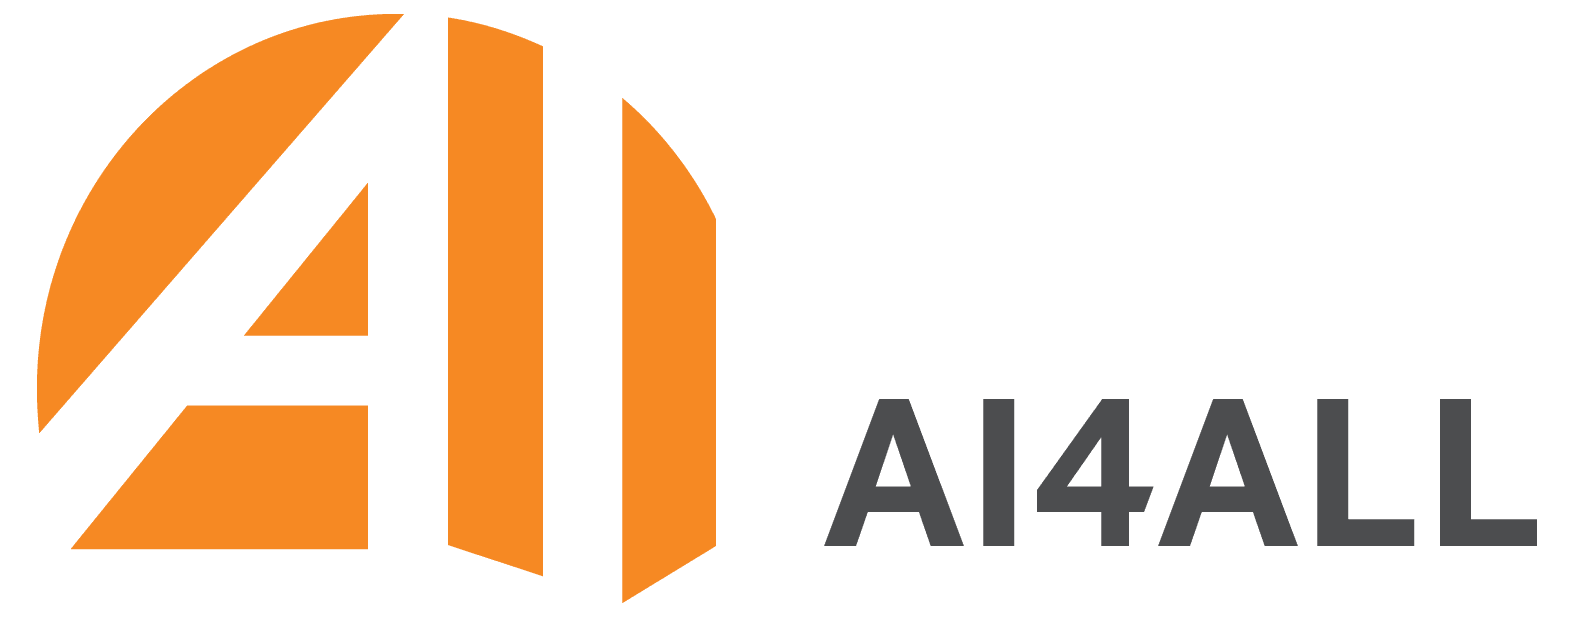 AI4All logo